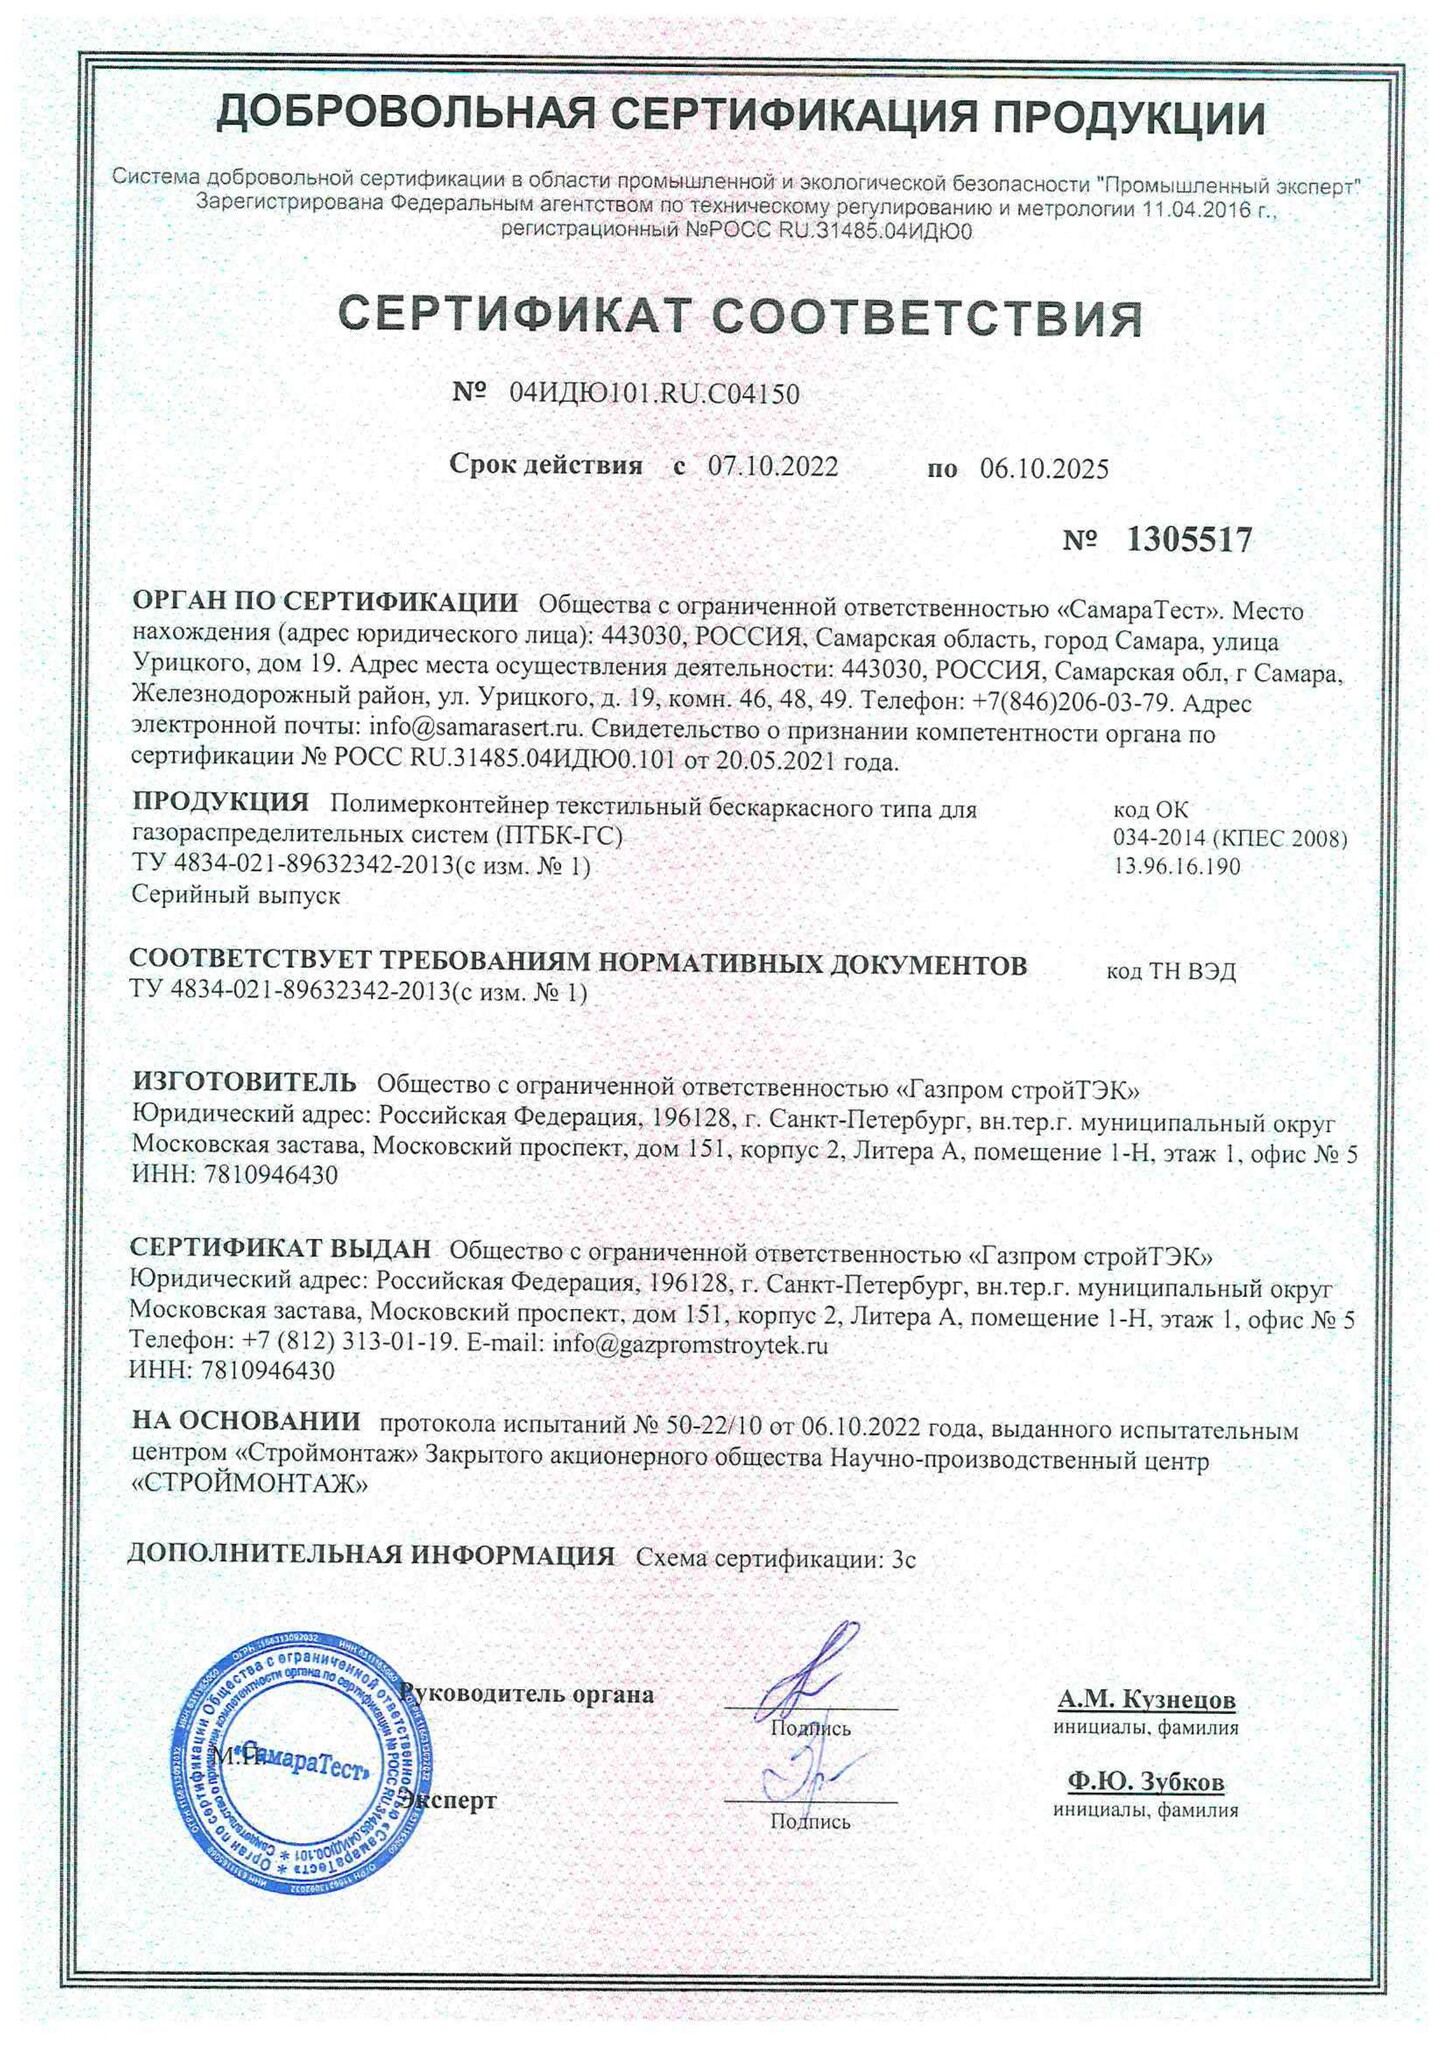 Сертификат ПТБК-ГС с изм. № 1 до 06.10.2025